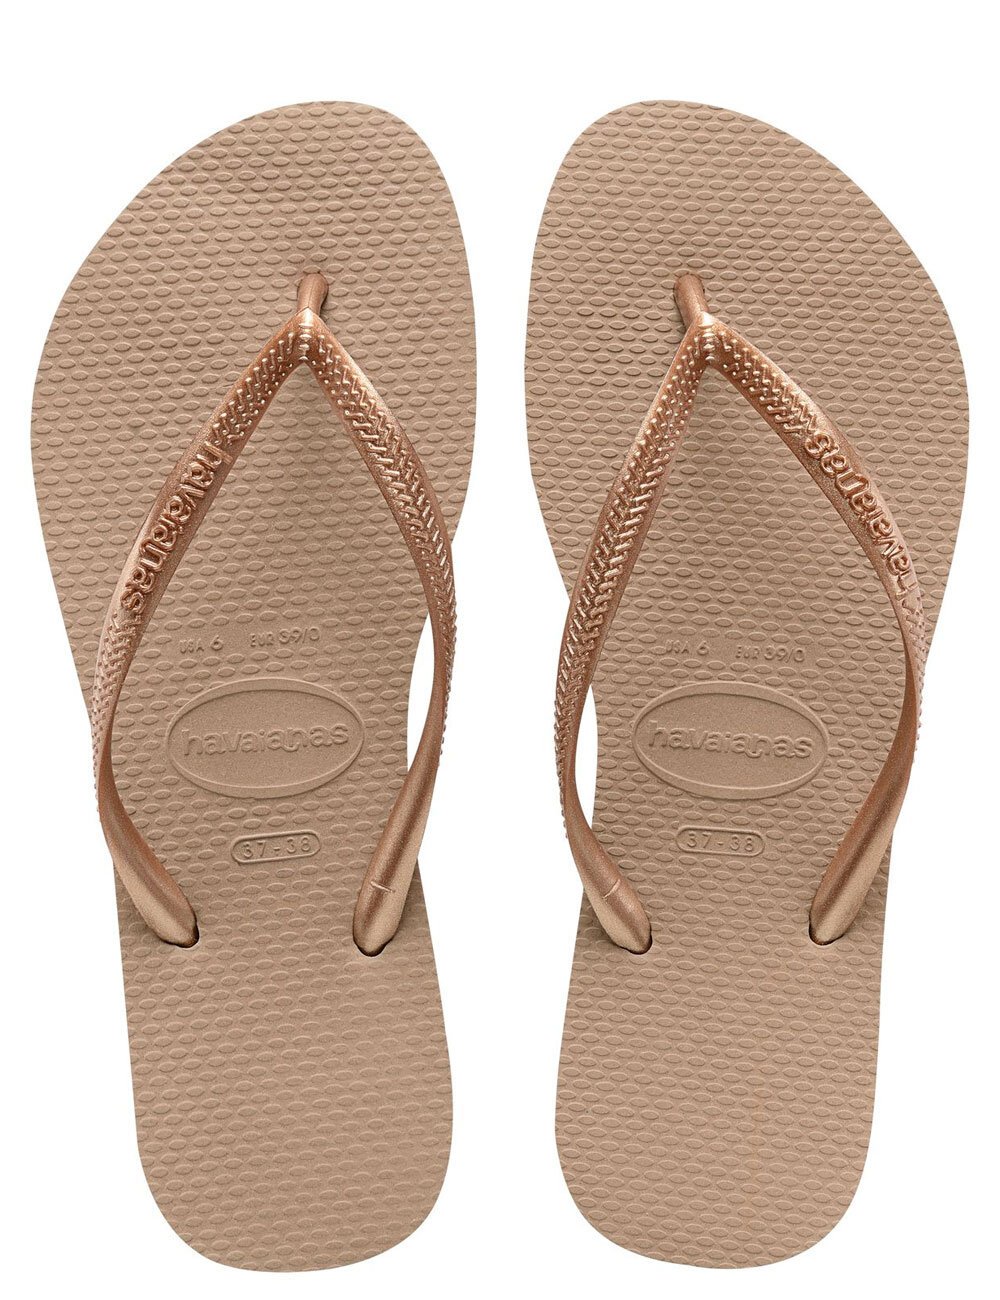 SLIM JANDAL - ROSE GOLD - Shop All Women's Footwear - Shoes, Slides ...